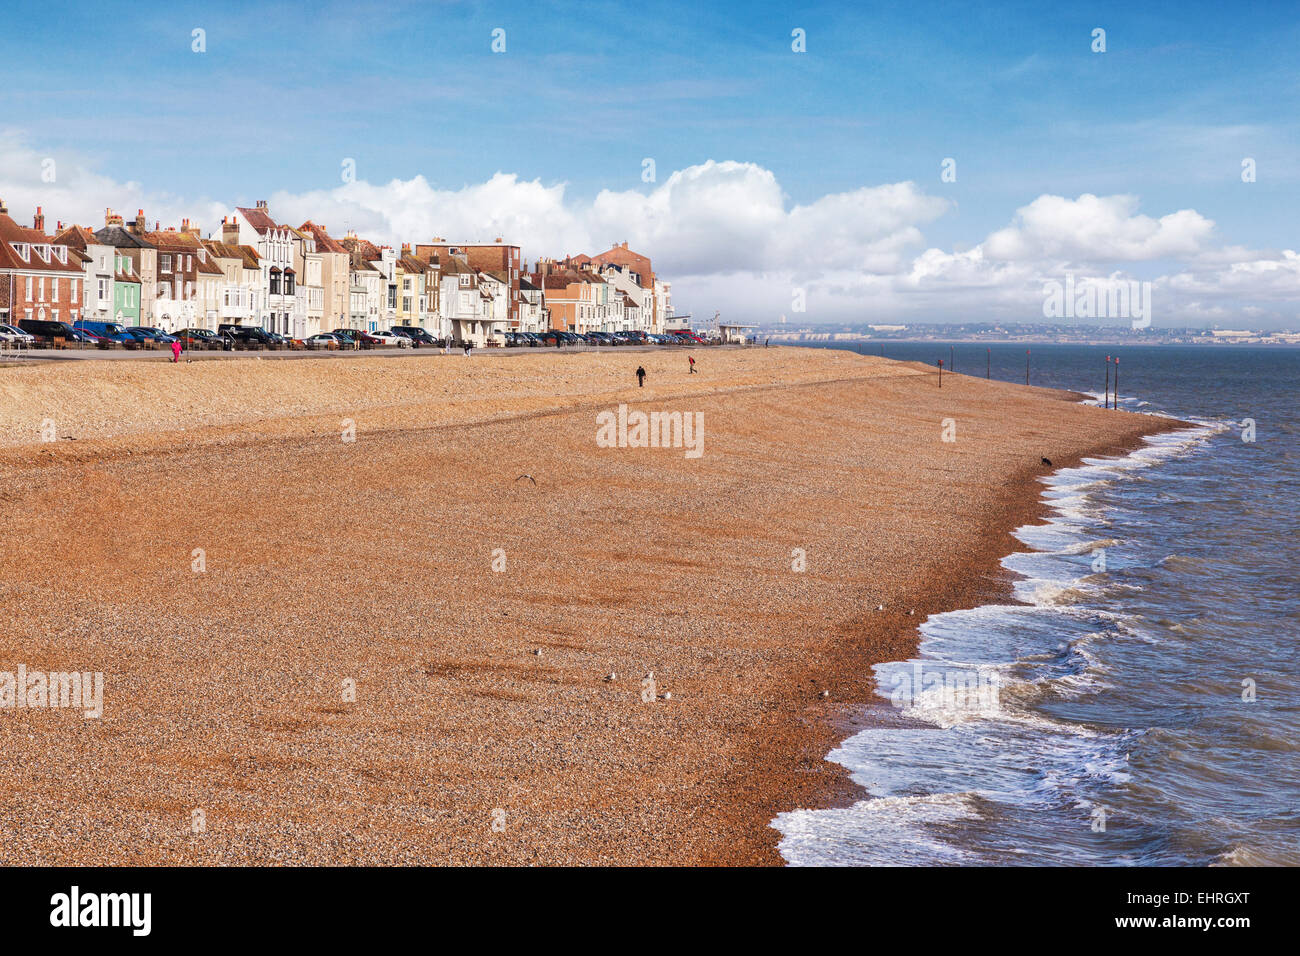 La plage de Deal, Kent, Angleterre, Royaume-Uni. Banque D'Images